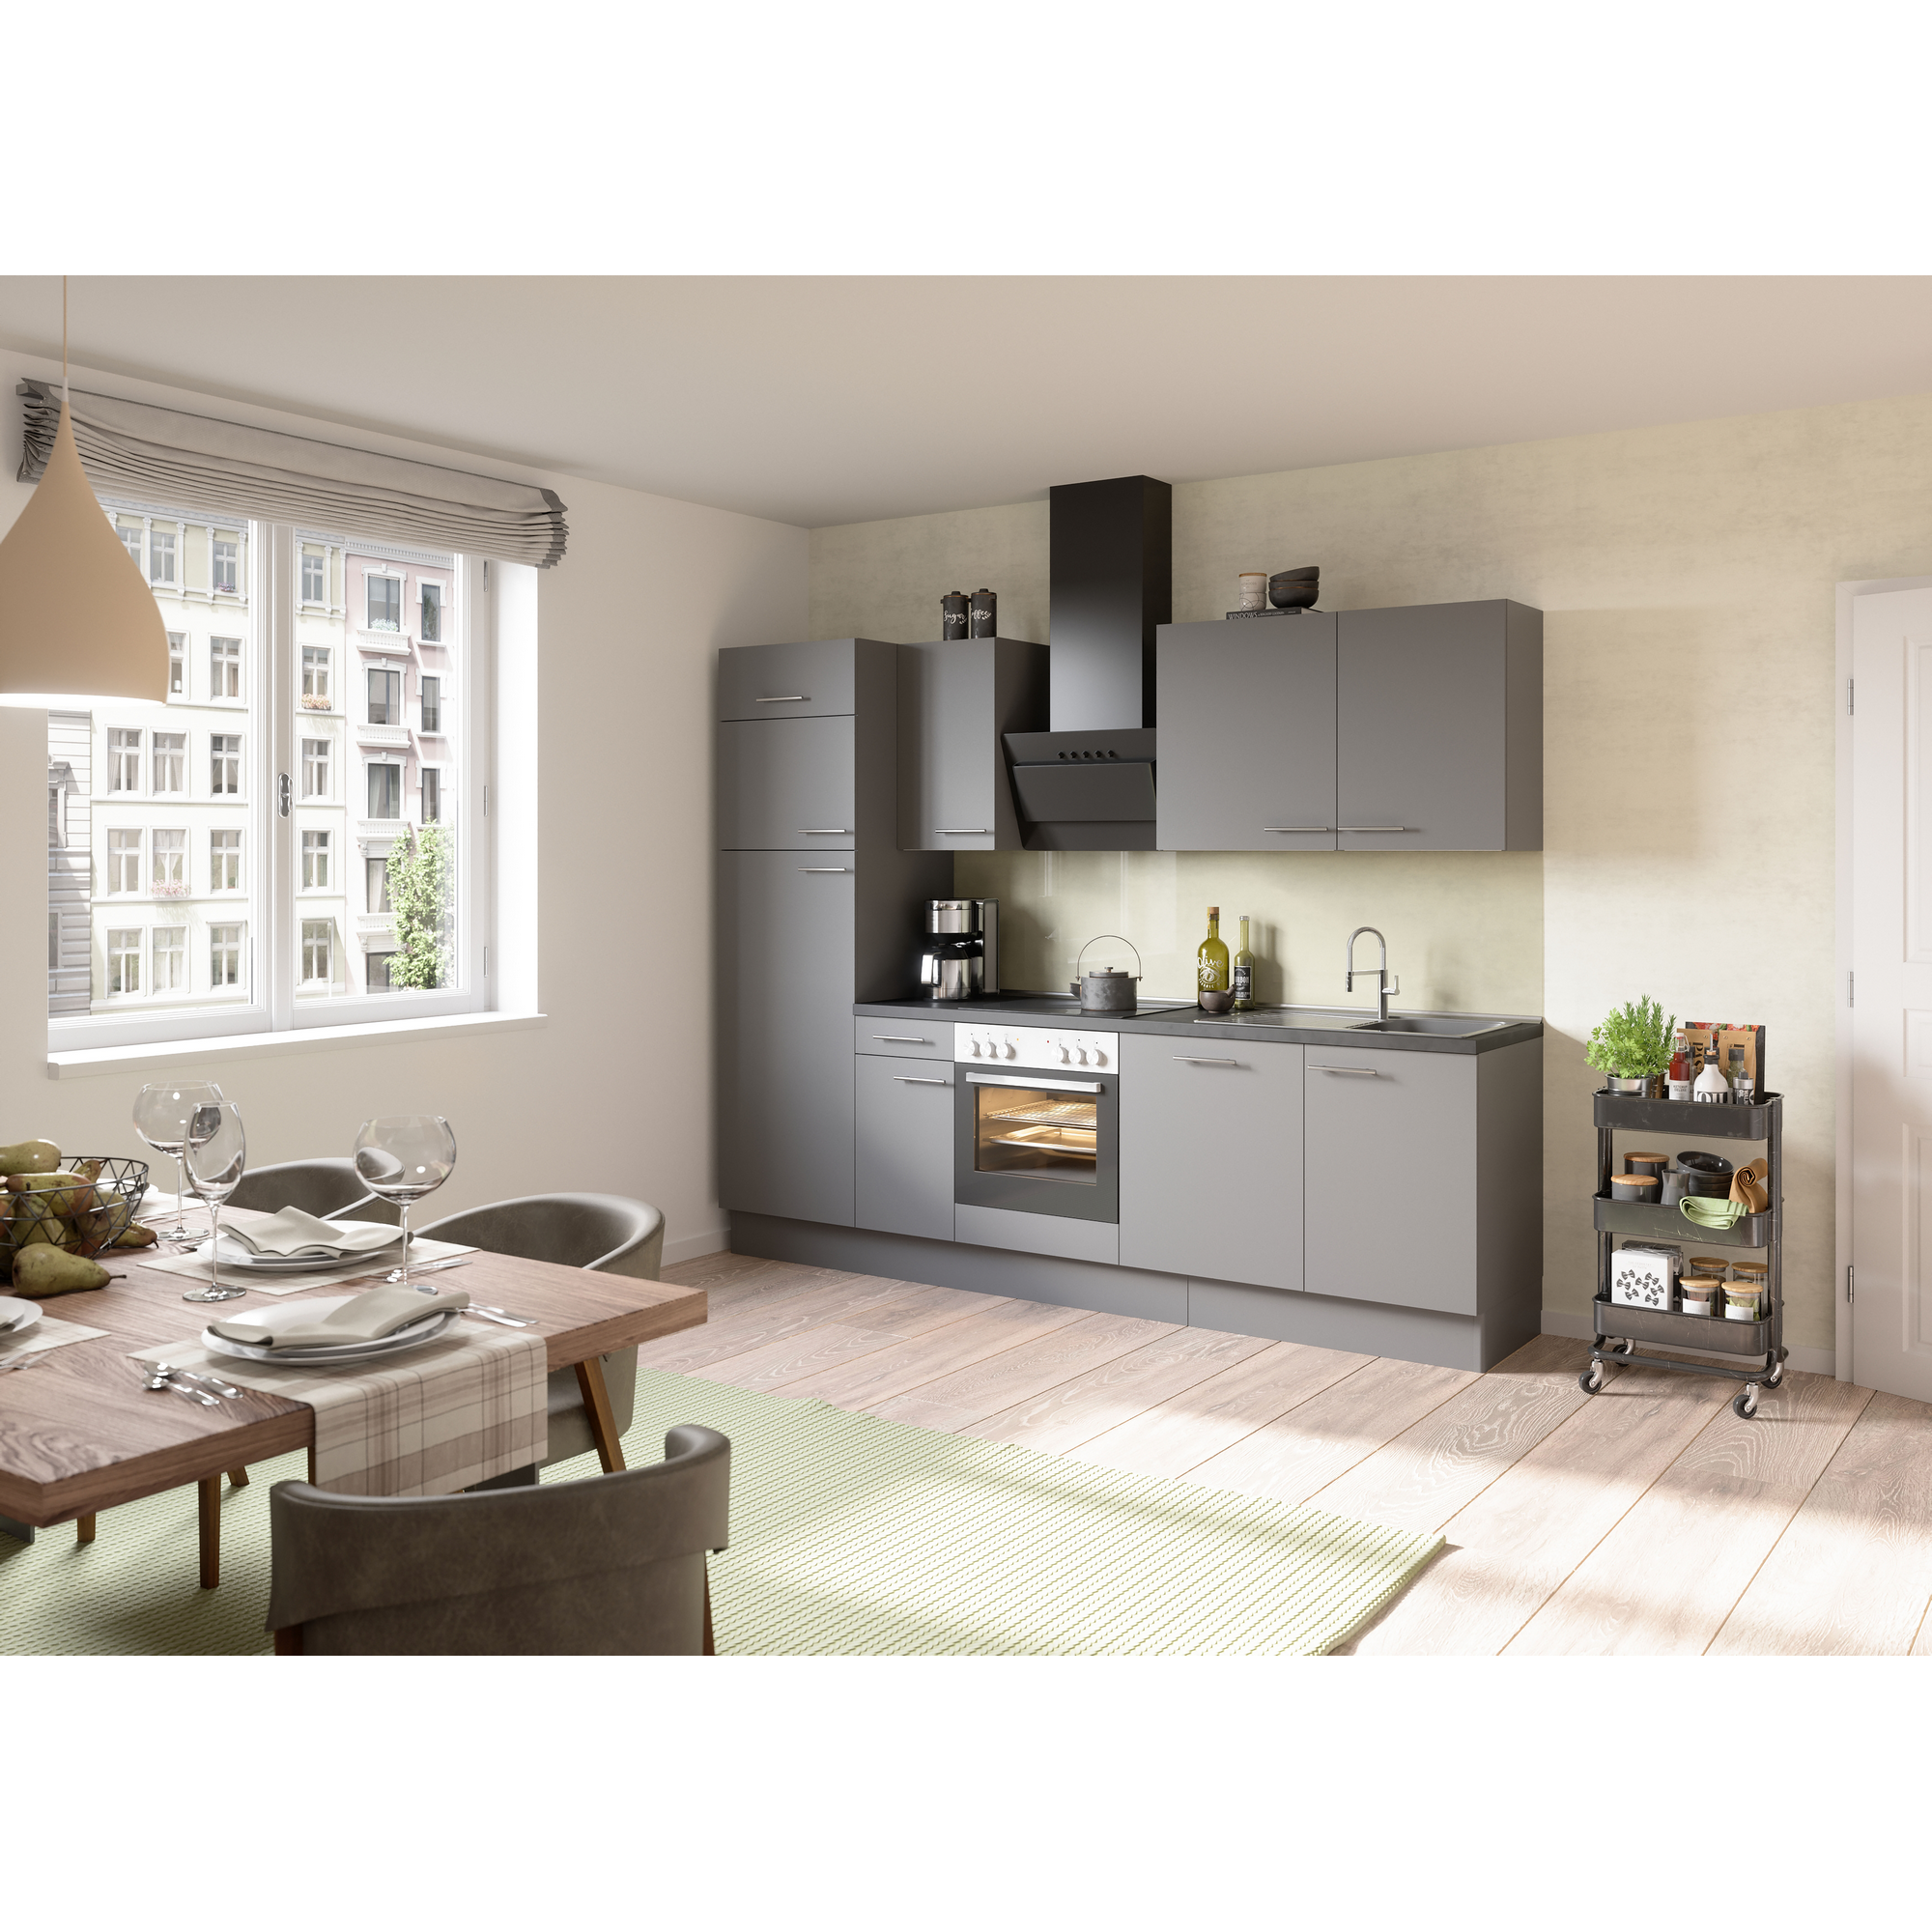 Küchenzeile mit E-Geräten 'OPTIkoncept Mats825' grau 270 cm + product picture